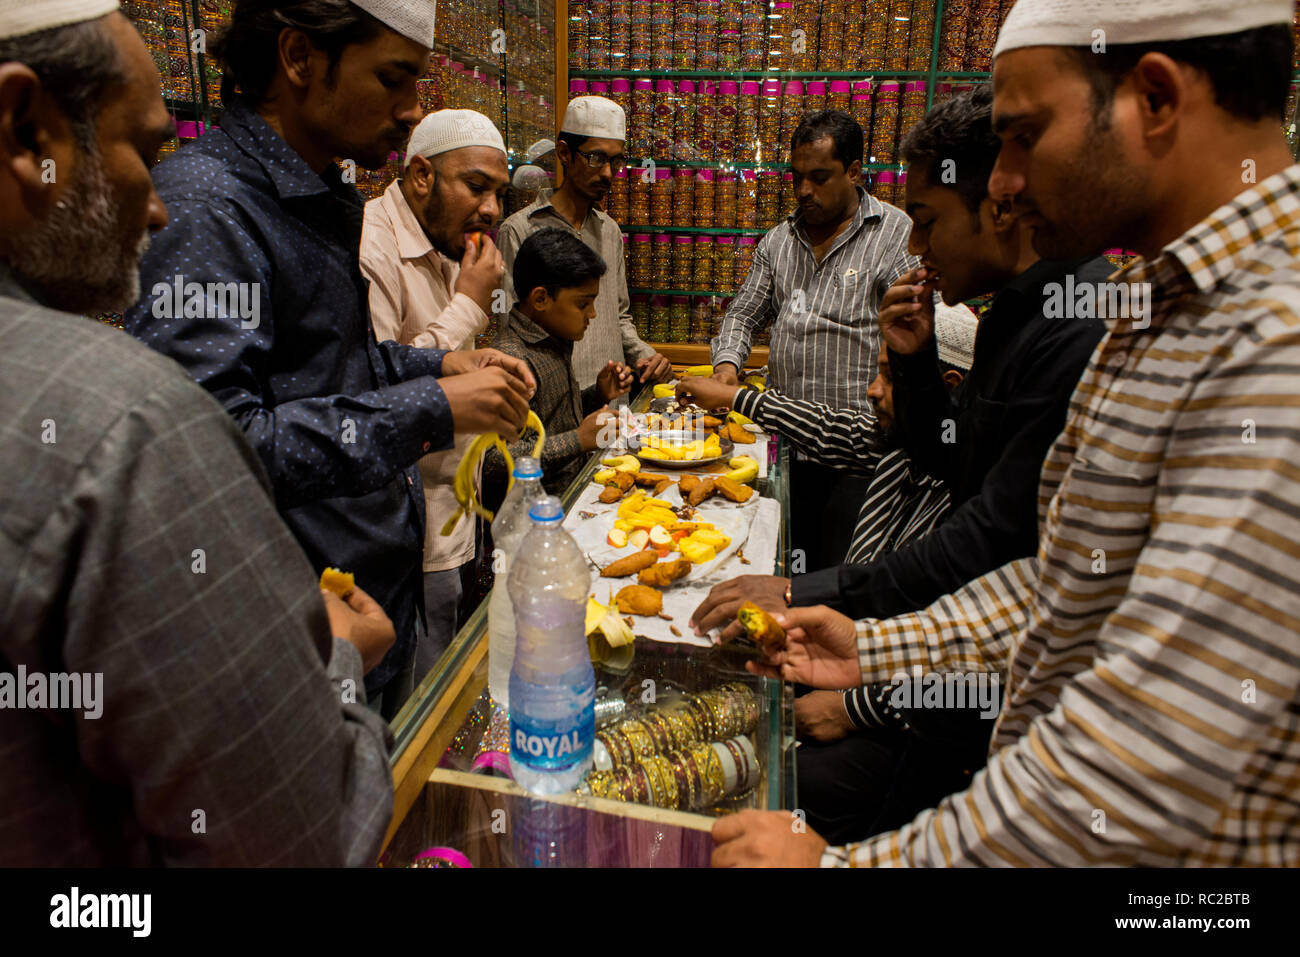 Les musulmans mangent de la nourriture après le jeûne pendant la journée durant le Ramadan. Banque D'Images